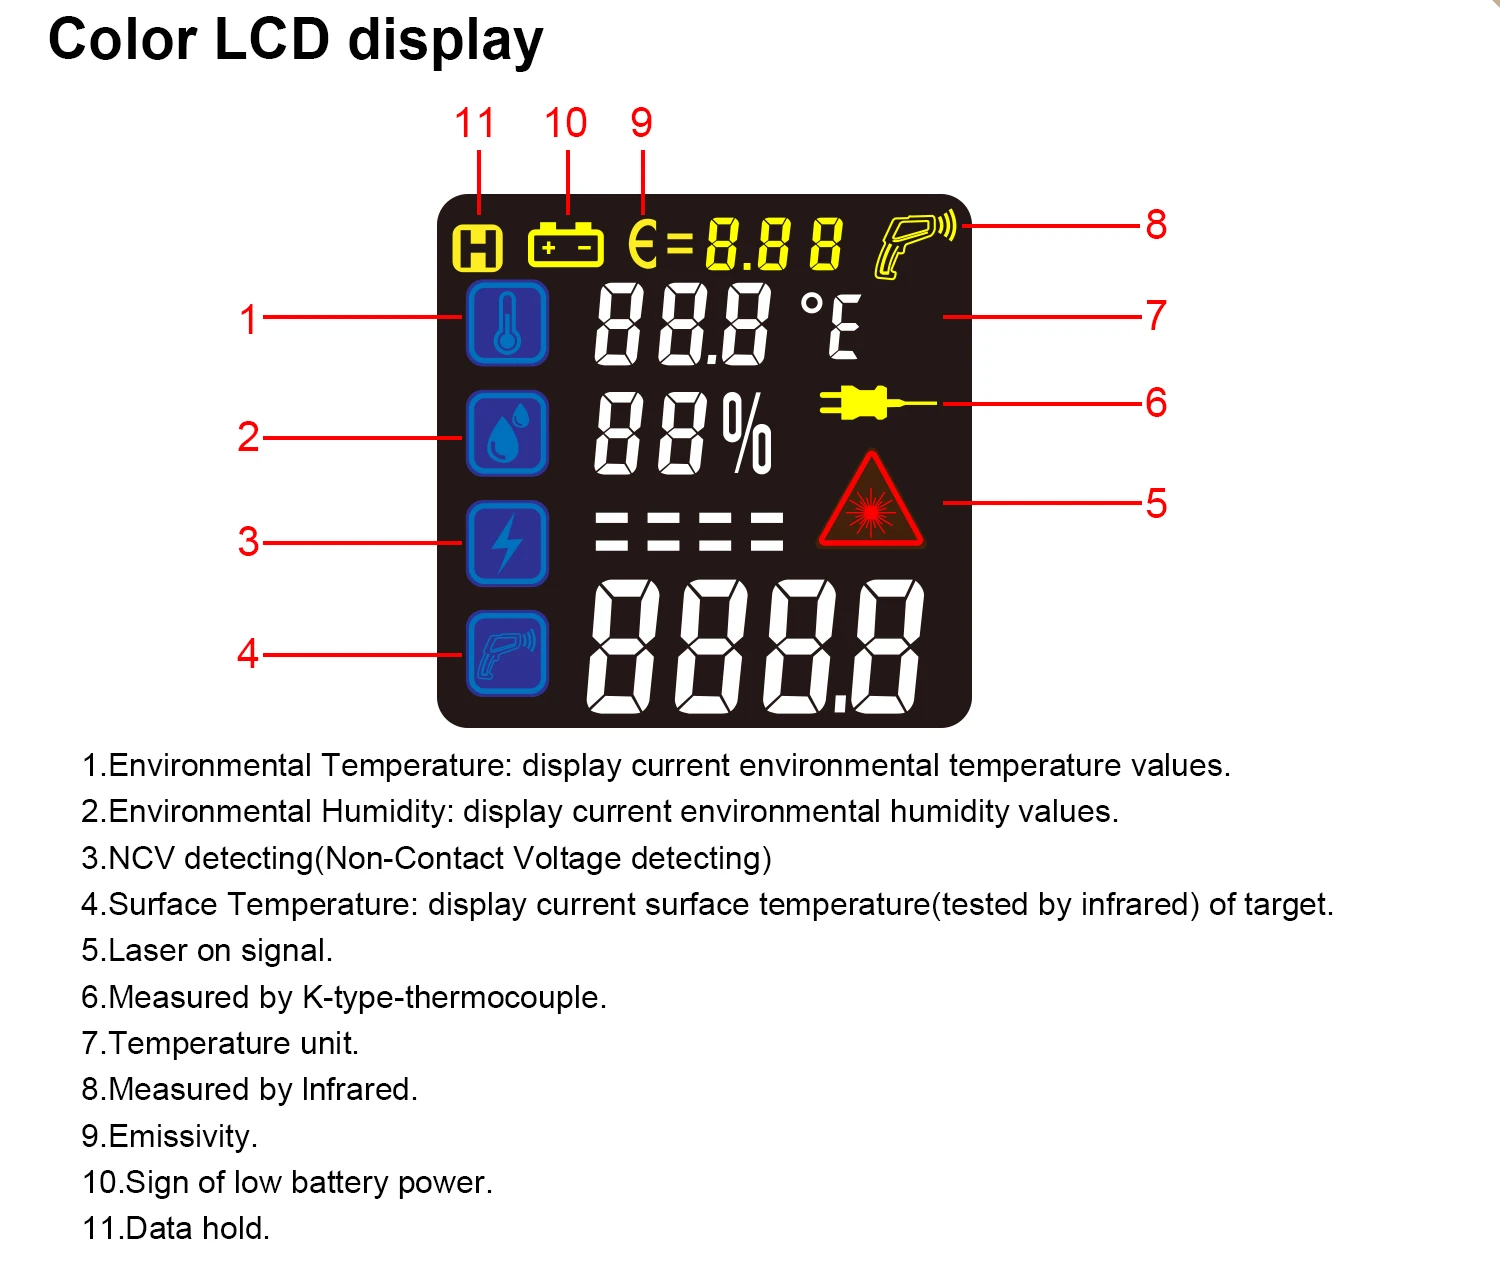 Thermomètre industriel à double laser sans contact, appareil numérique à haute  température - AliExpress